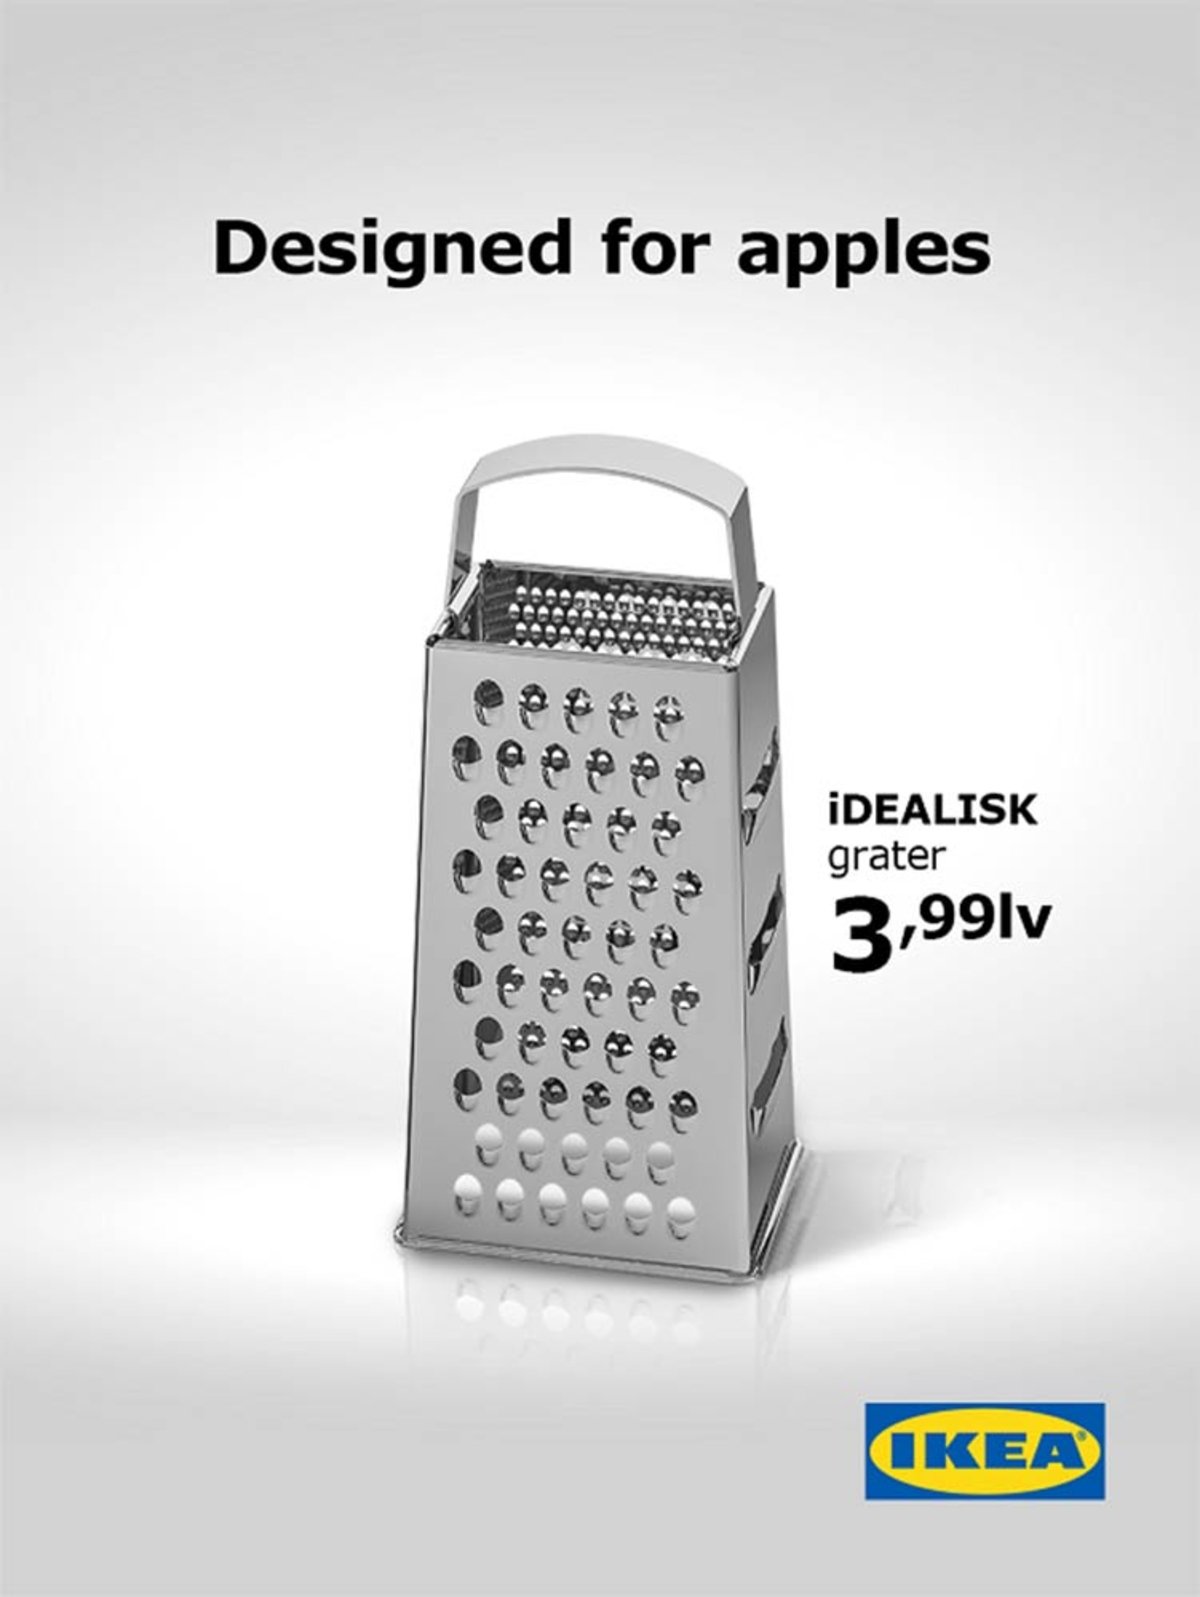 IKEA trollea a Apple con el anuncio de su rallador de queso y el Mac Pro